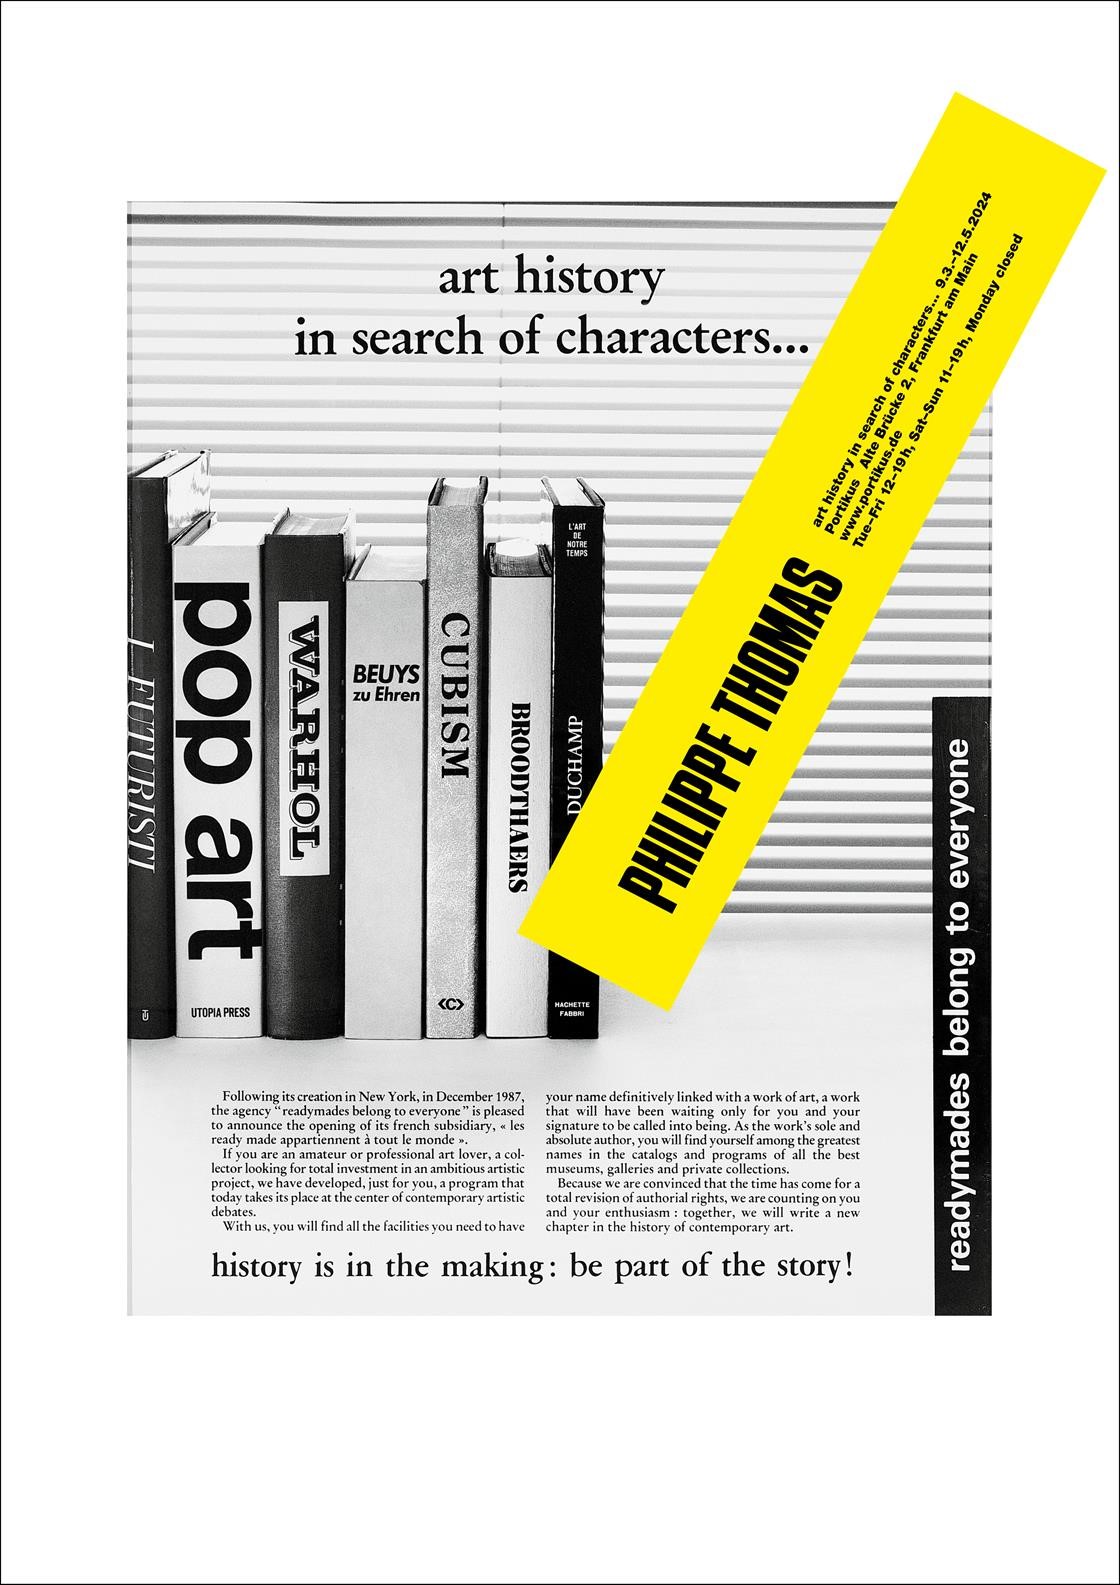 Plakat mit Titel, Ausstellungsdaten und Text vor einem schwarz-weißem Bild mit Büchern über Kunst